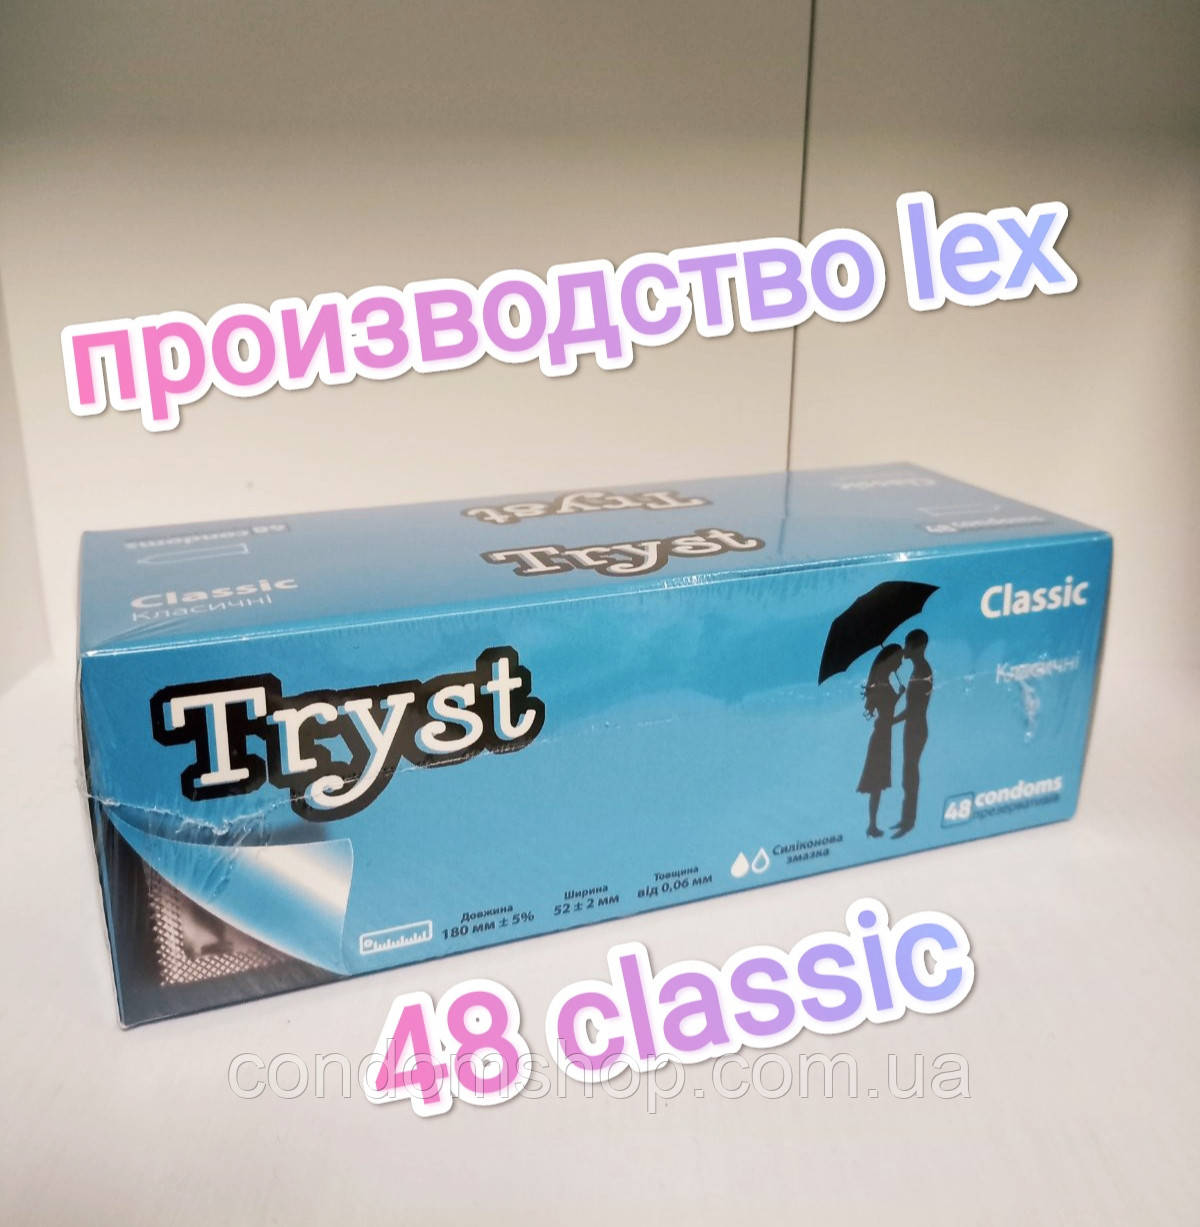 Презервативи Tryst classic 48 штук Висока якість ! Класичні презервативи.Україна